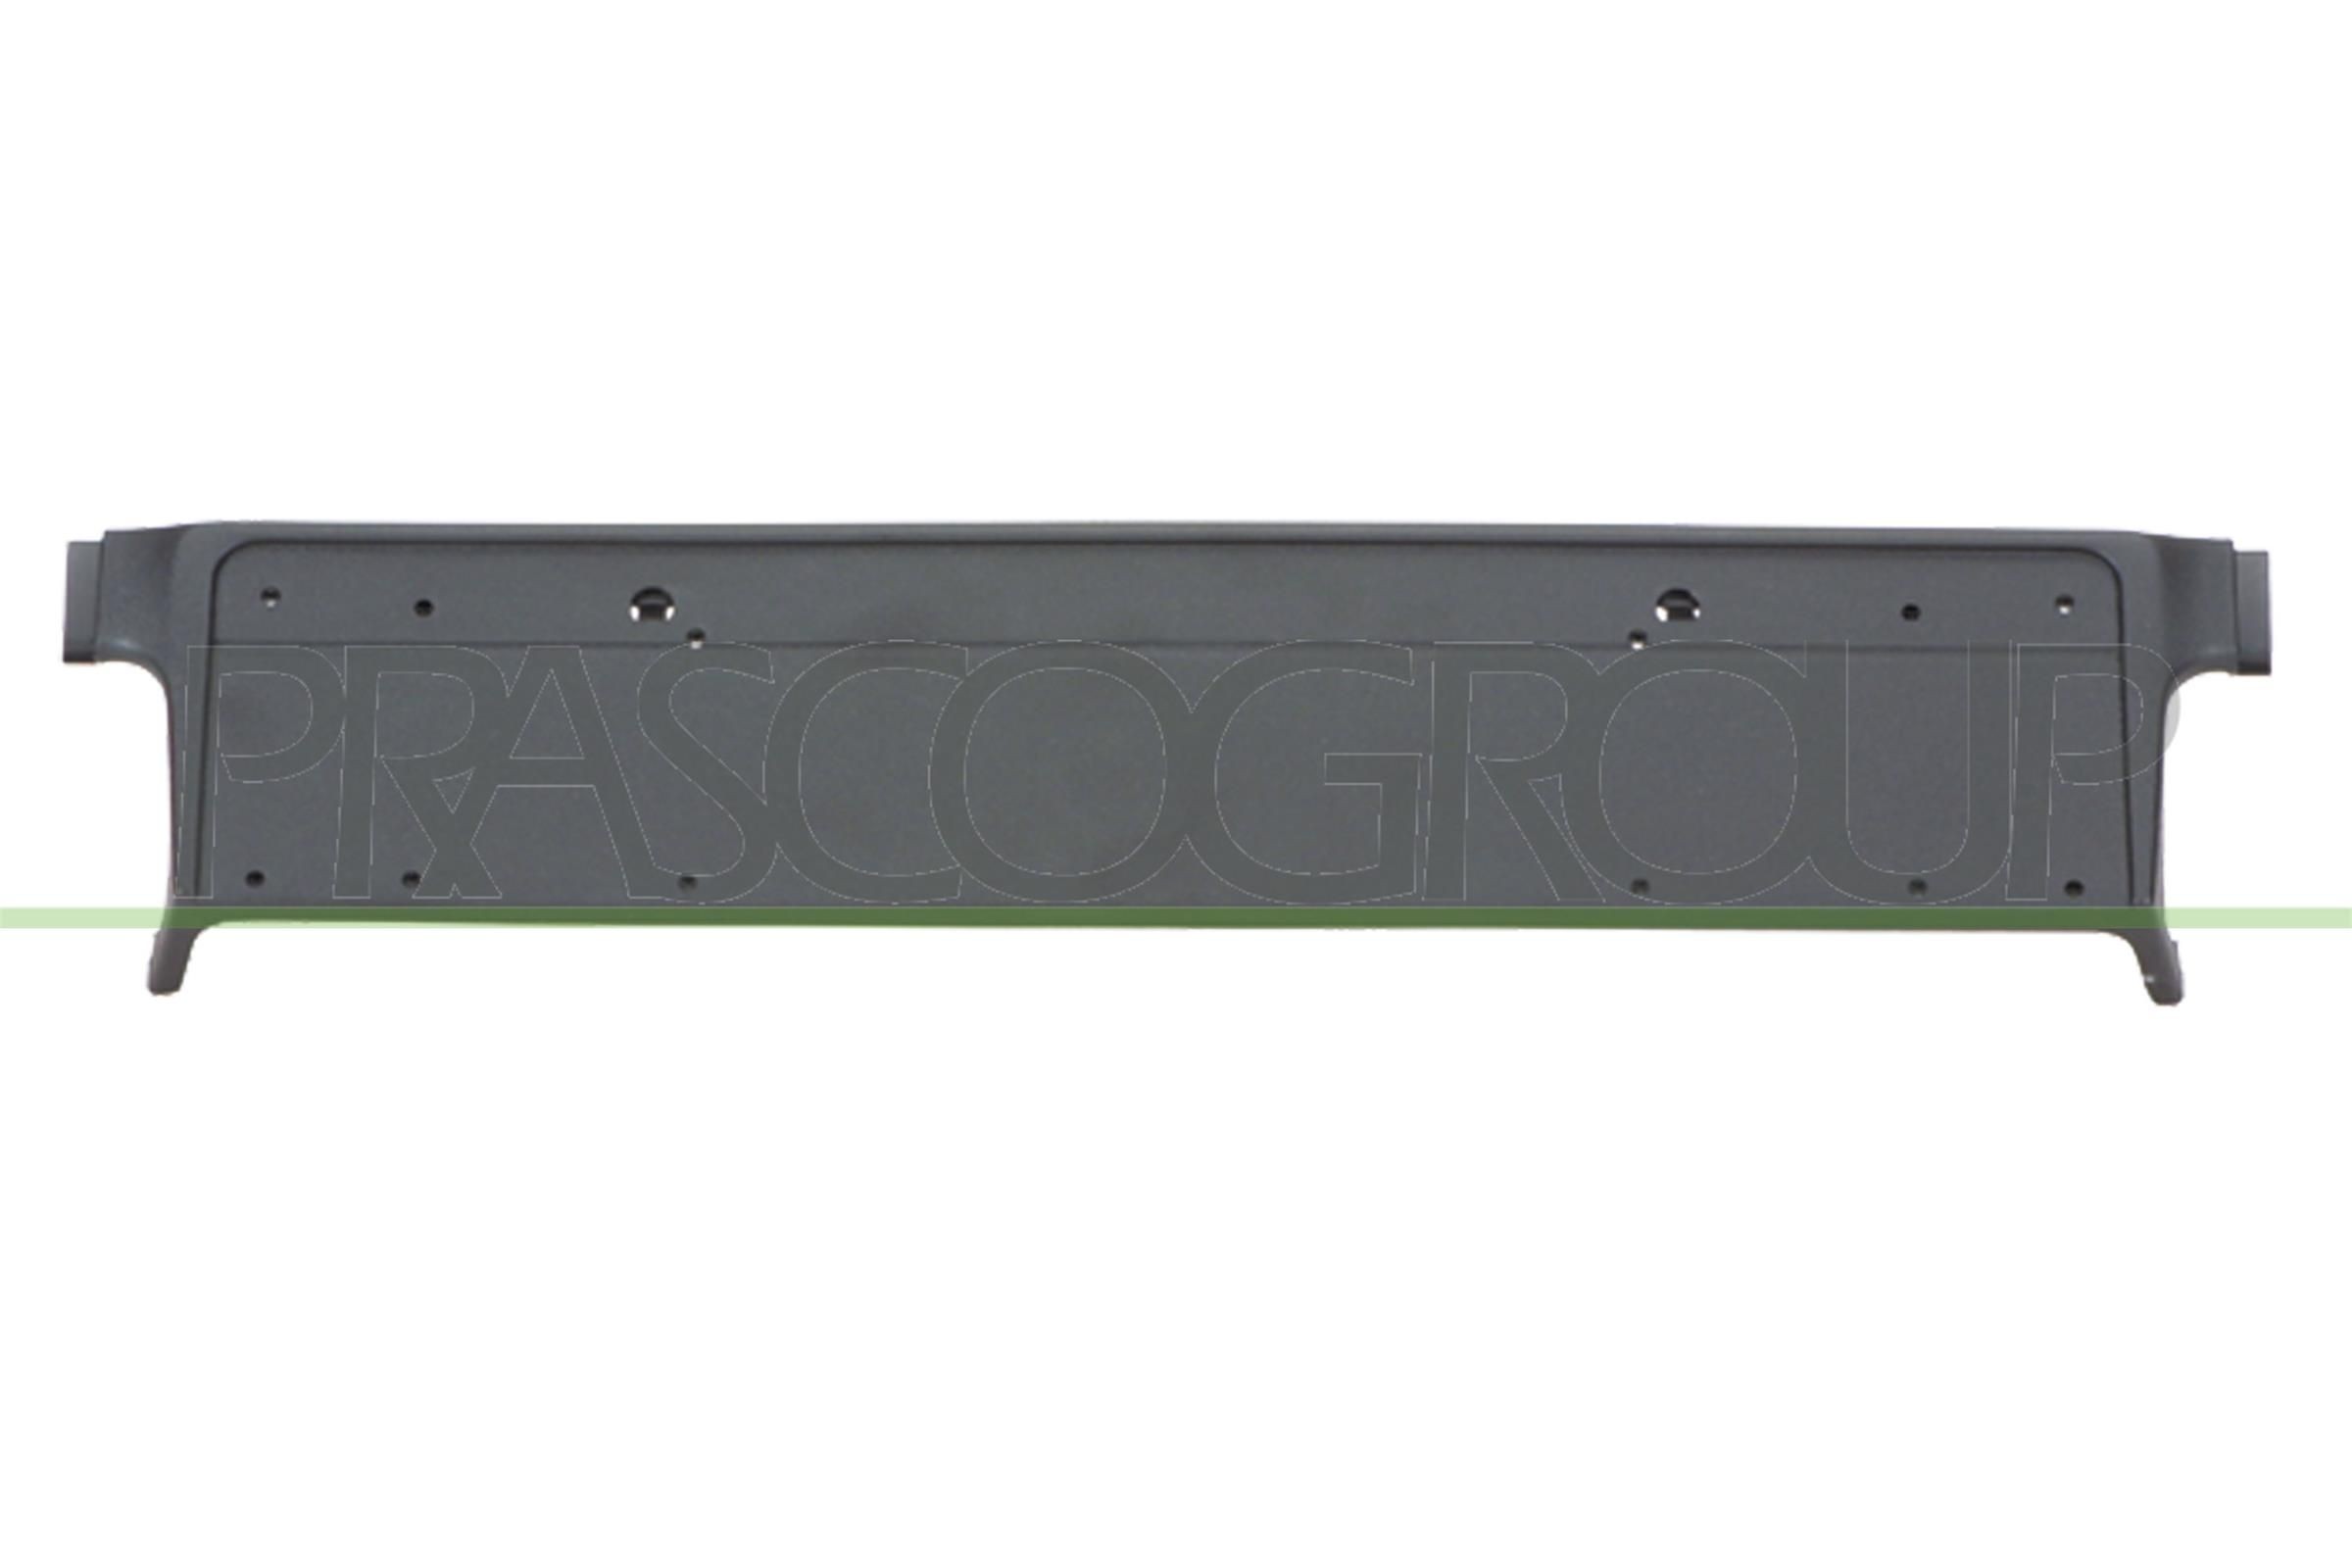 PRASCO Licence plate holder / bracket E46 Coupe new BM0441539